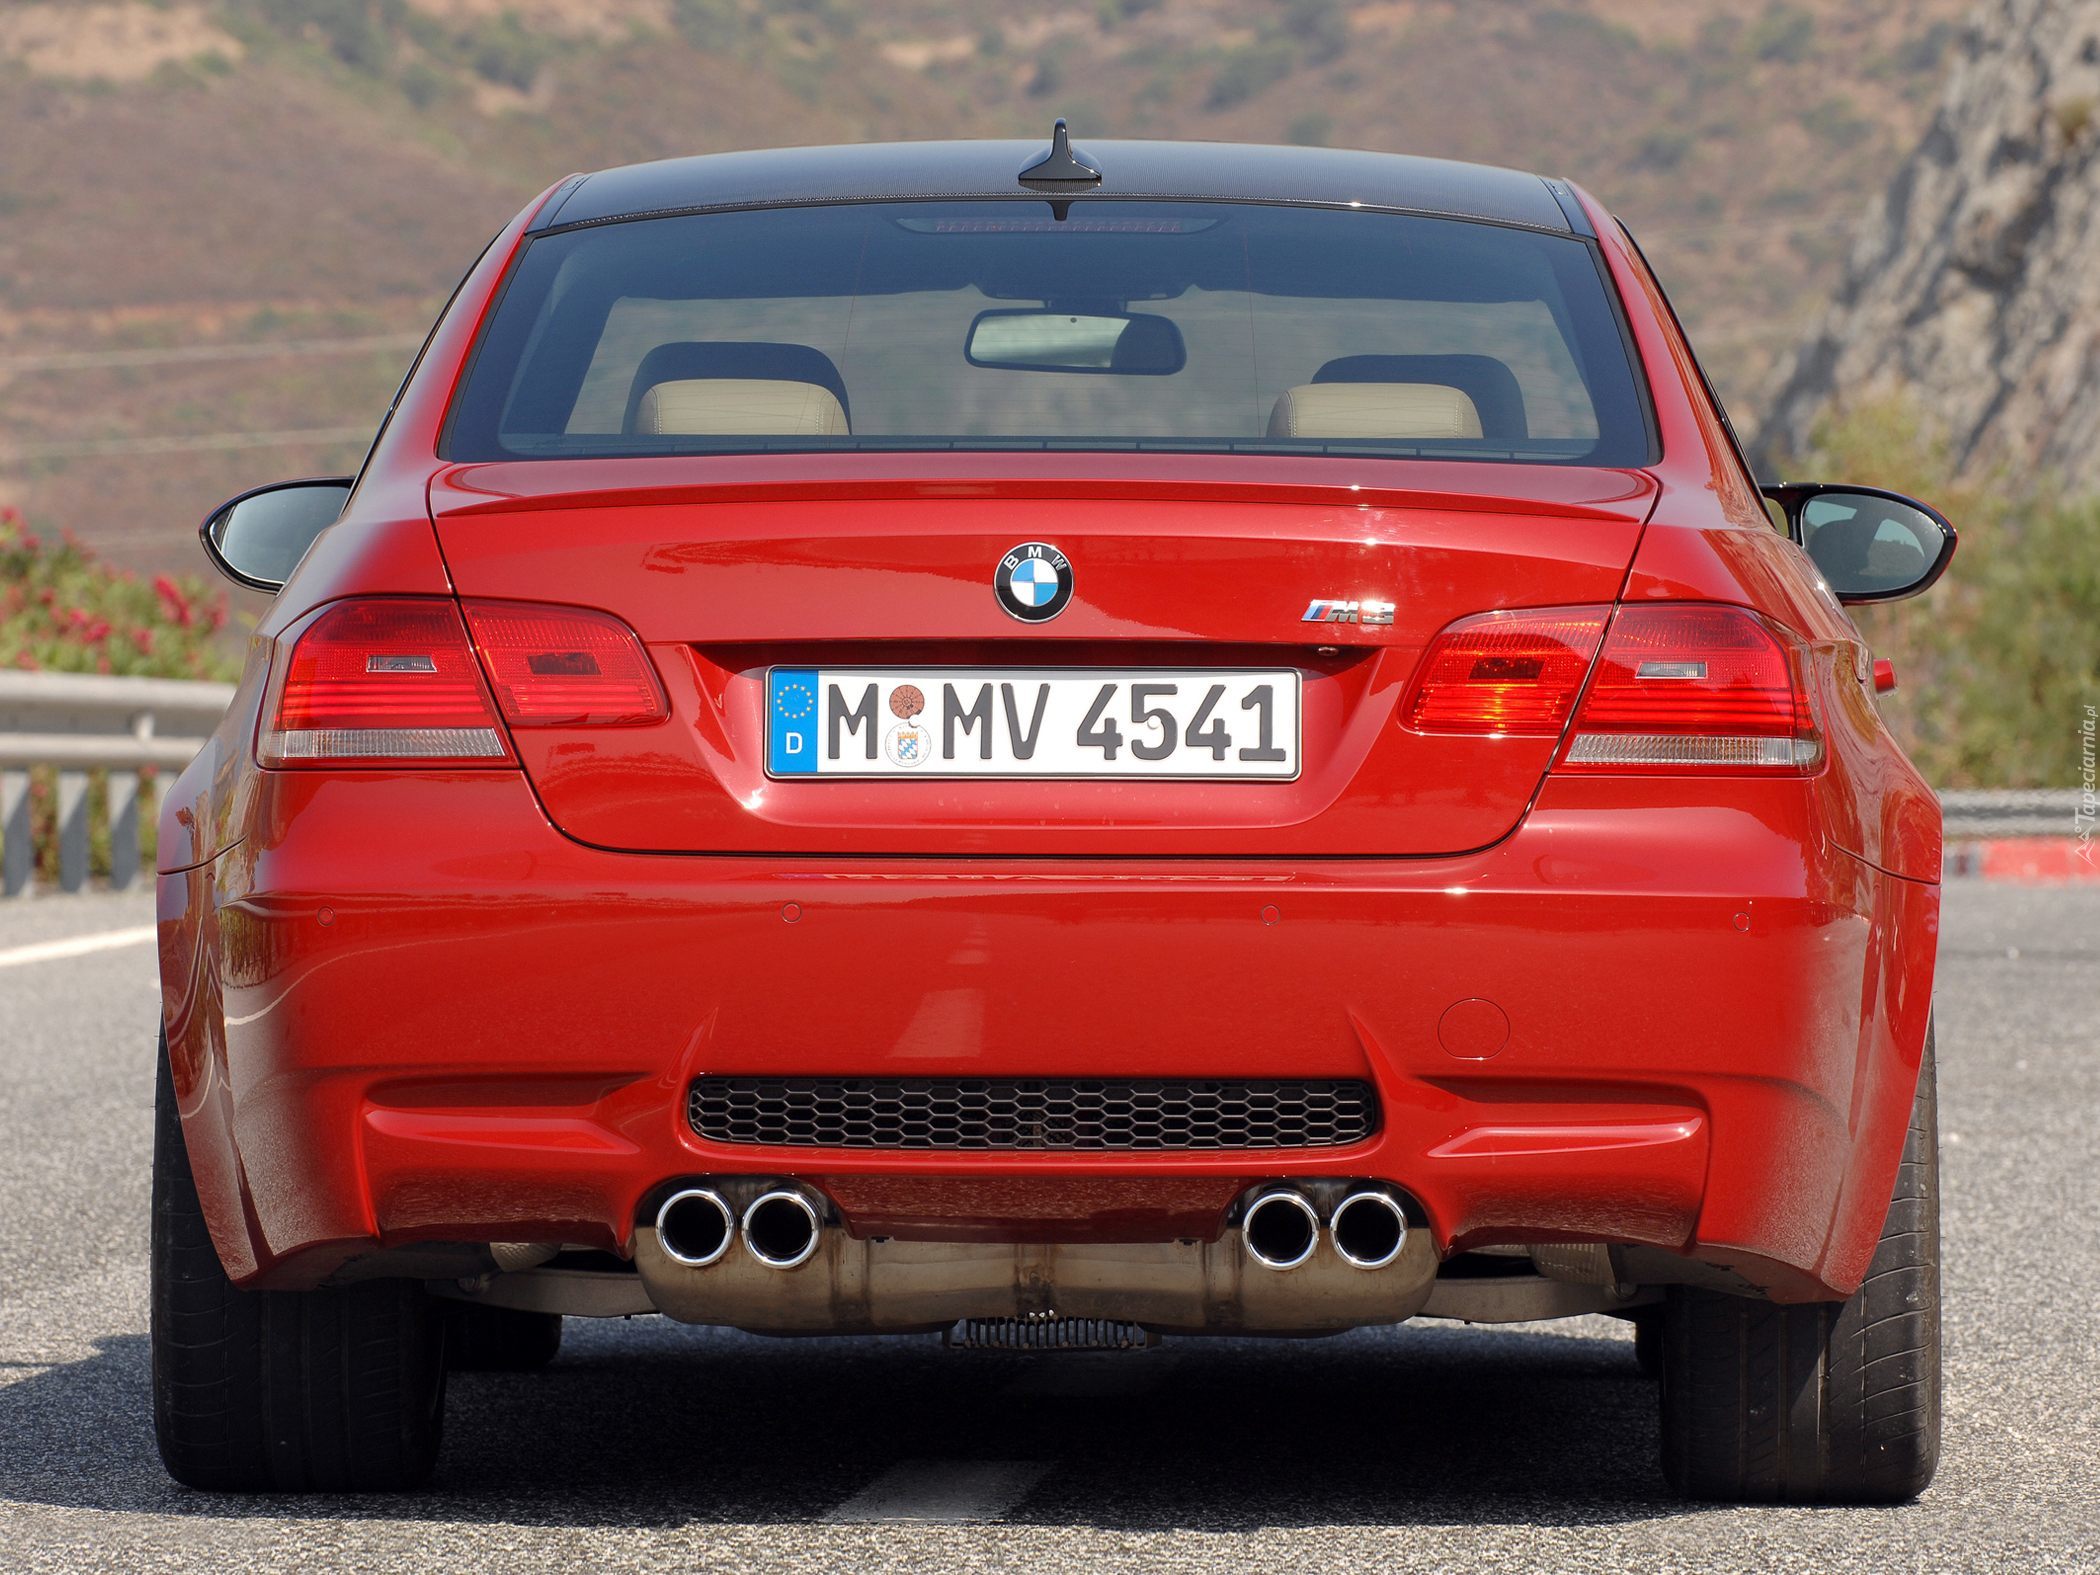 Tył, BMW M3, Coupe